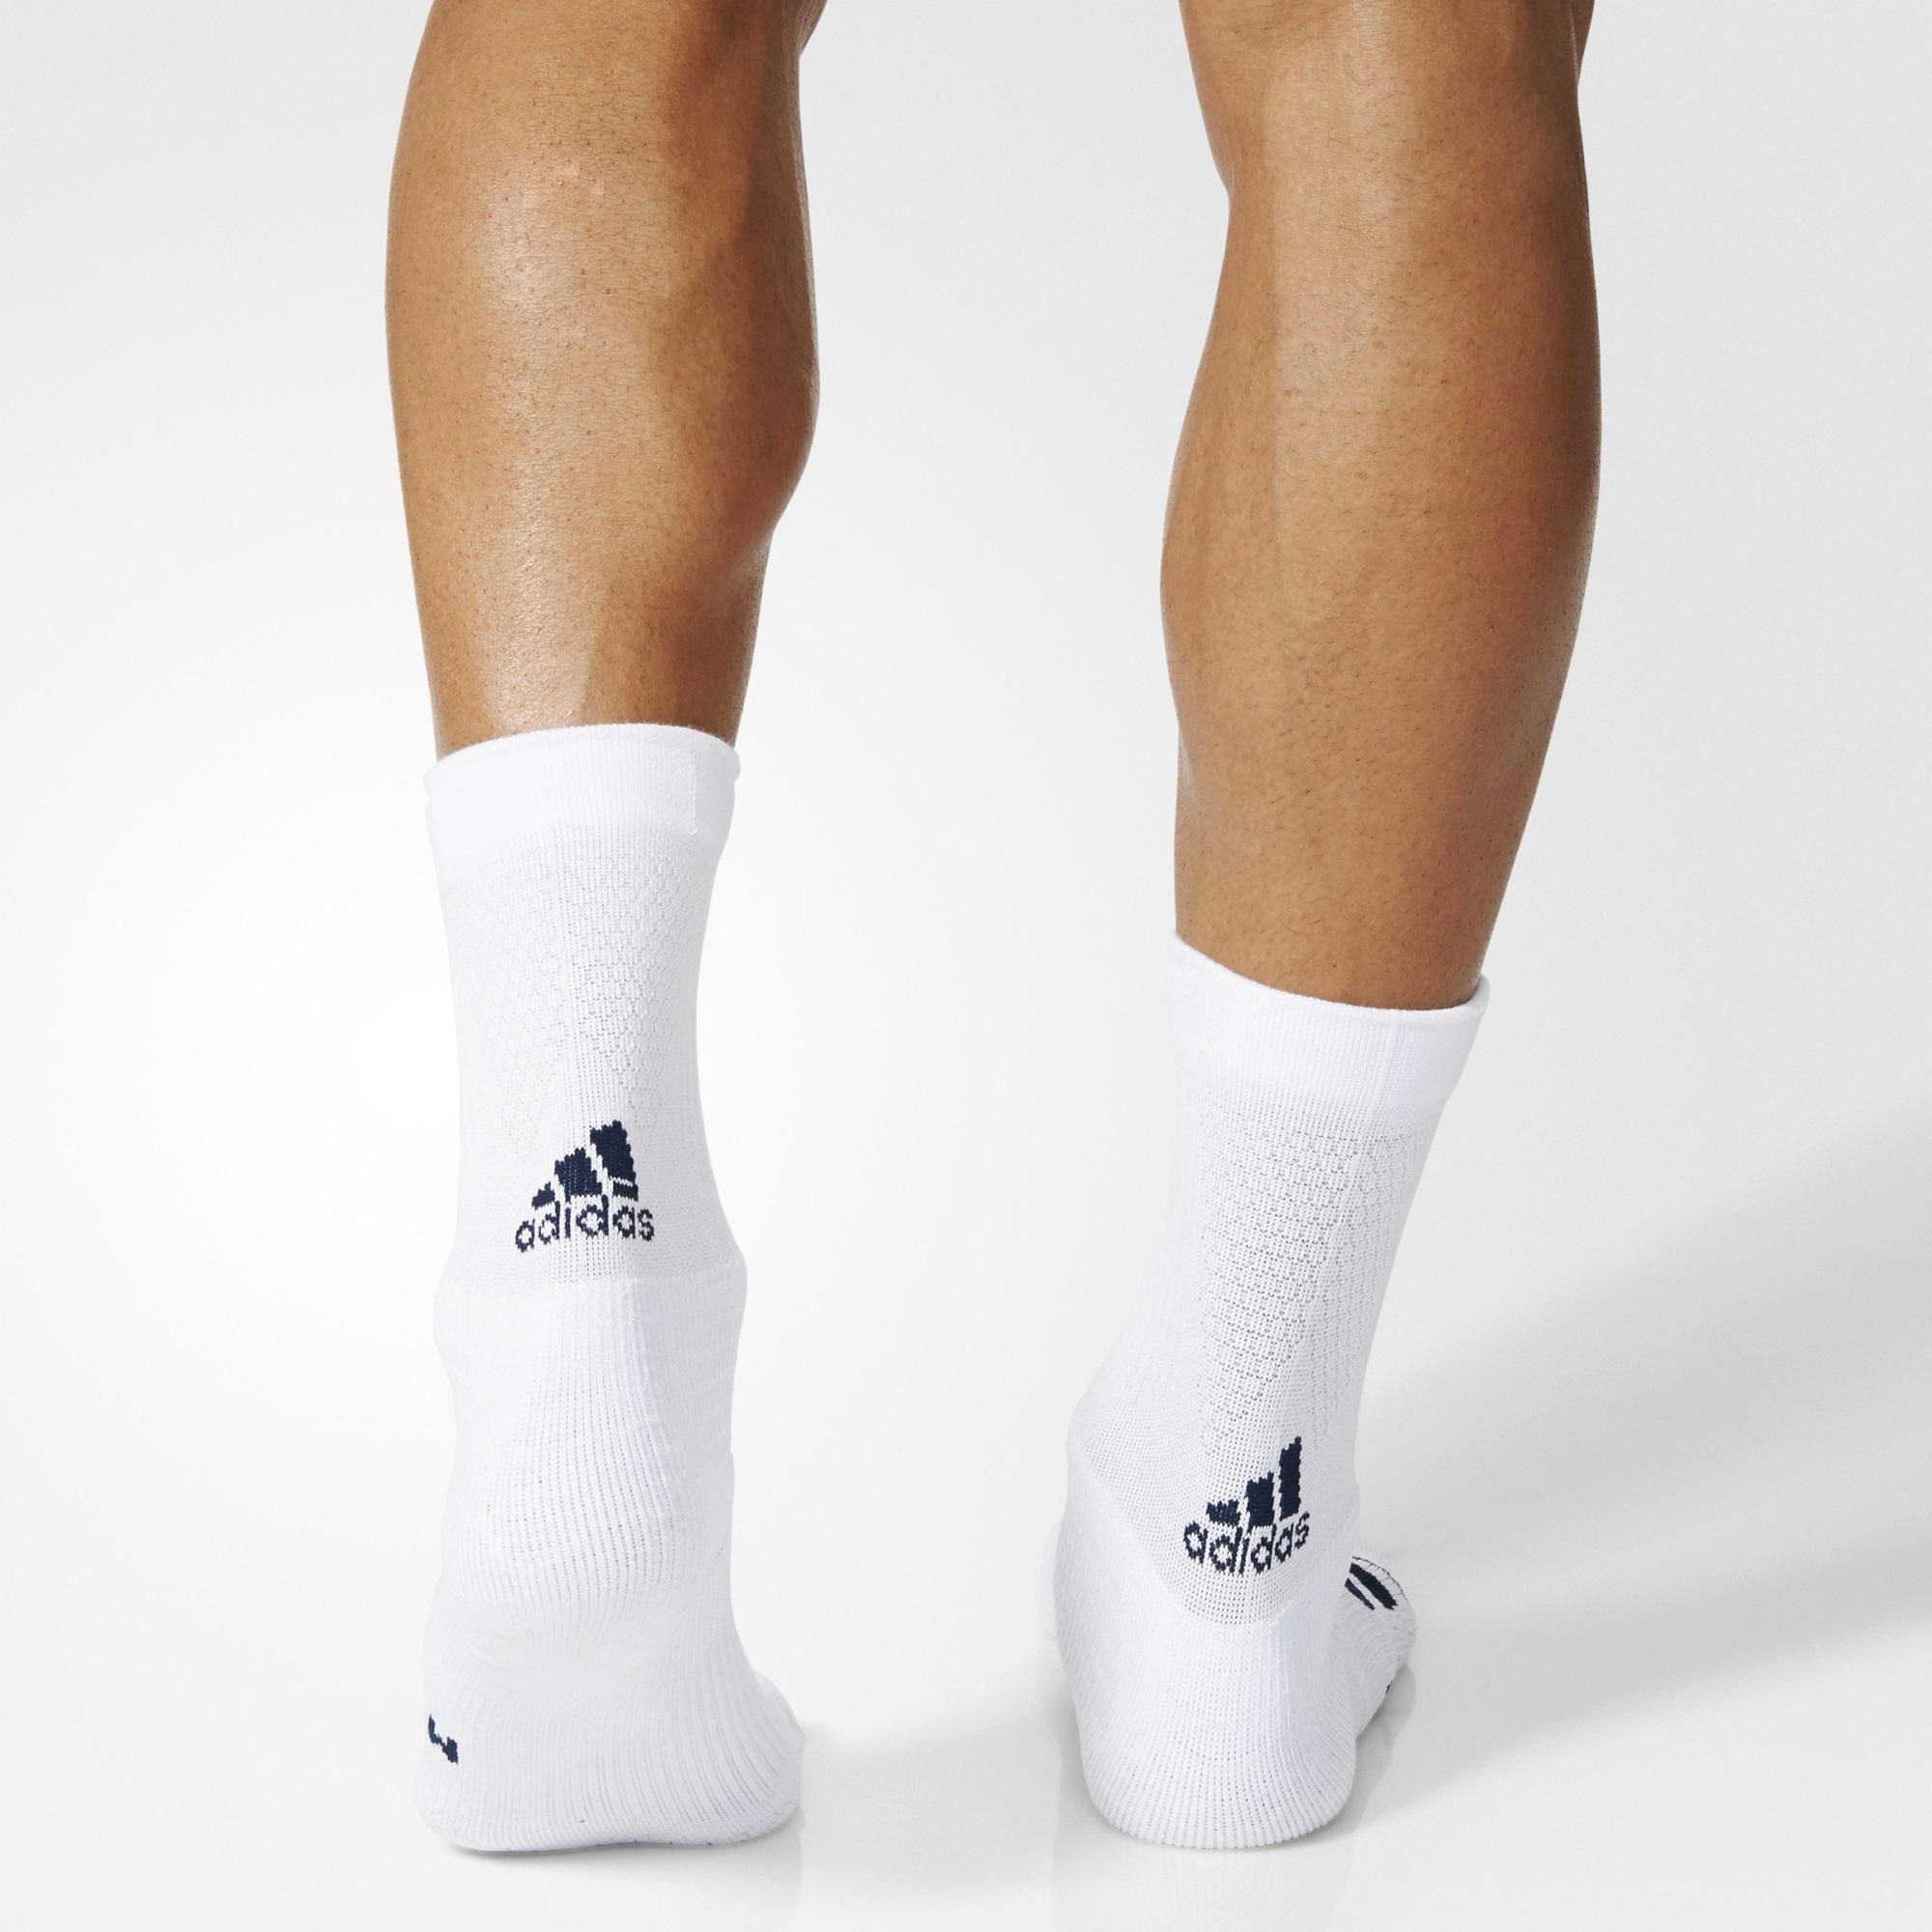 Adidas Tennis ID Crew Socks (1 Pair) - White/Black - Tennisnuts.com